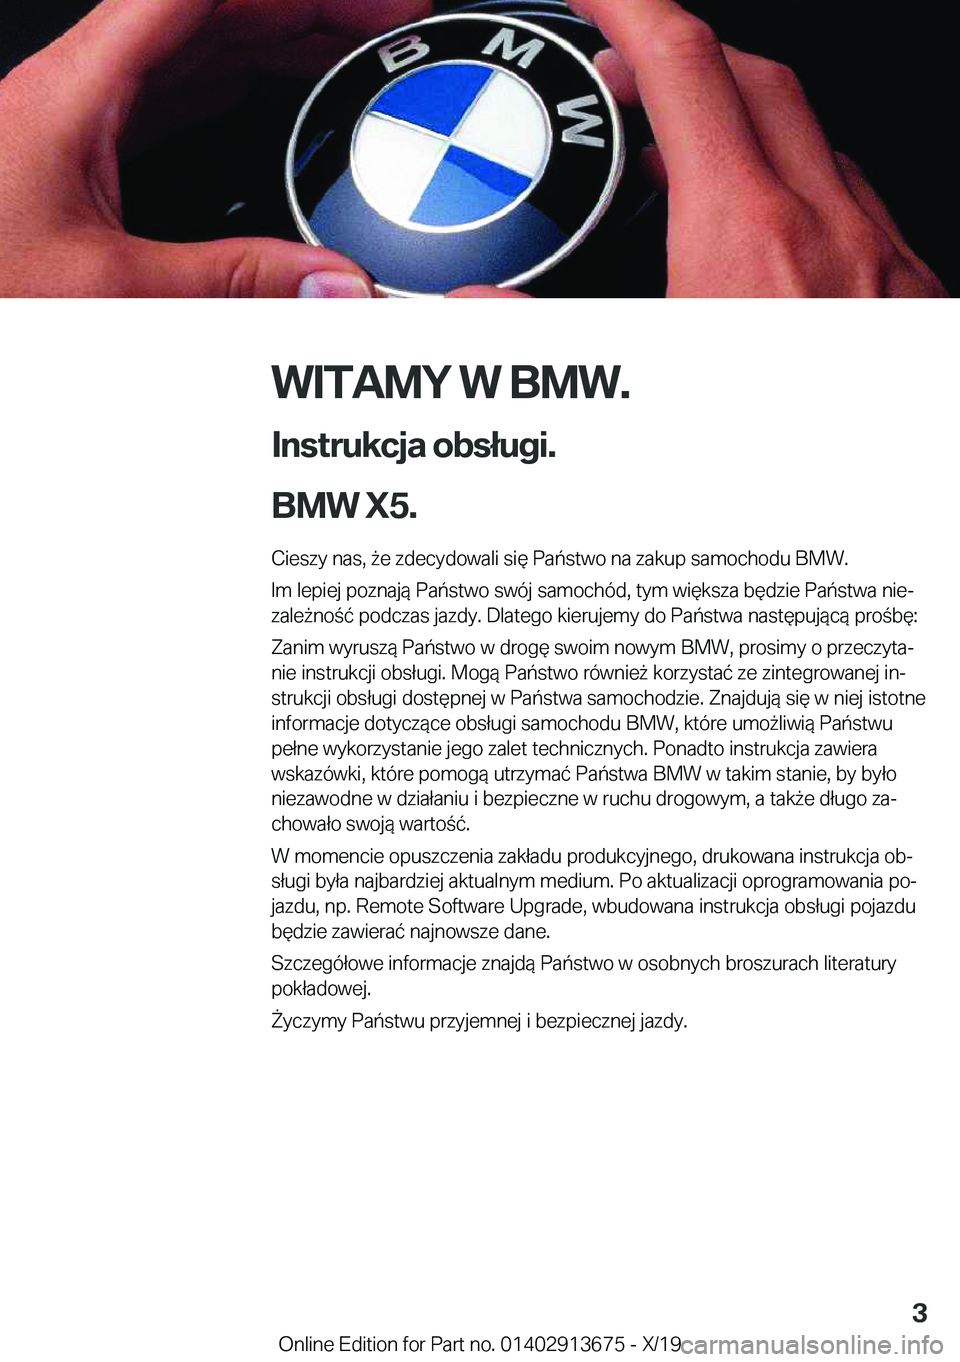 BMW X5 2020  Instrukcja obsługi (in Polish) �W�I�T�A�M�Y��W��B�M�W�.
�I�n�s�t�r�u�k�c�j�a��o�b�s�ł�u�g�i�.
�B�M�W��X�5�. �C�i�e�s�z�y��n�a�s�,�9�e��z�d�e�c�y�d�o�w�a�l�i��s�i�